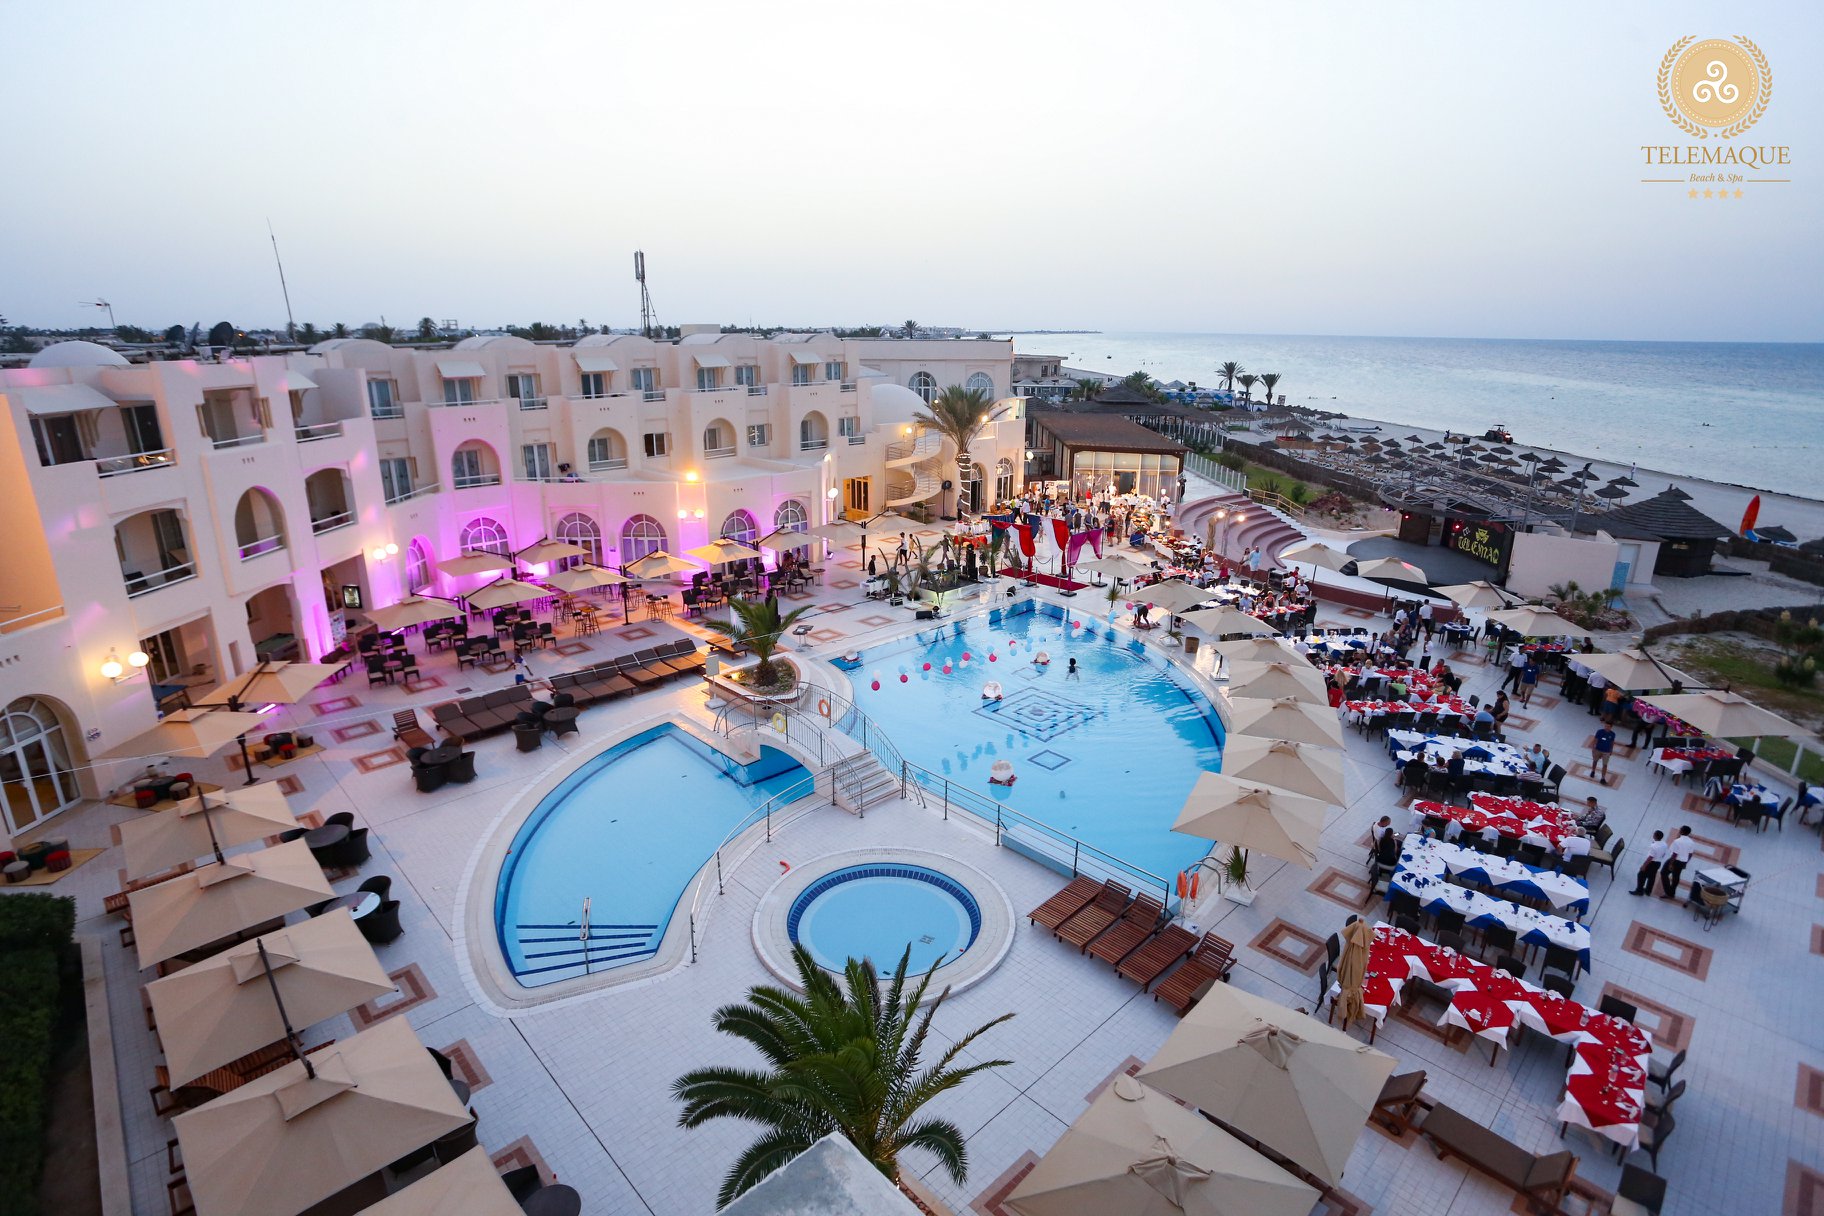 Telemaque Beach & Spa - All Inclusive, Insula Djerba Tunisia